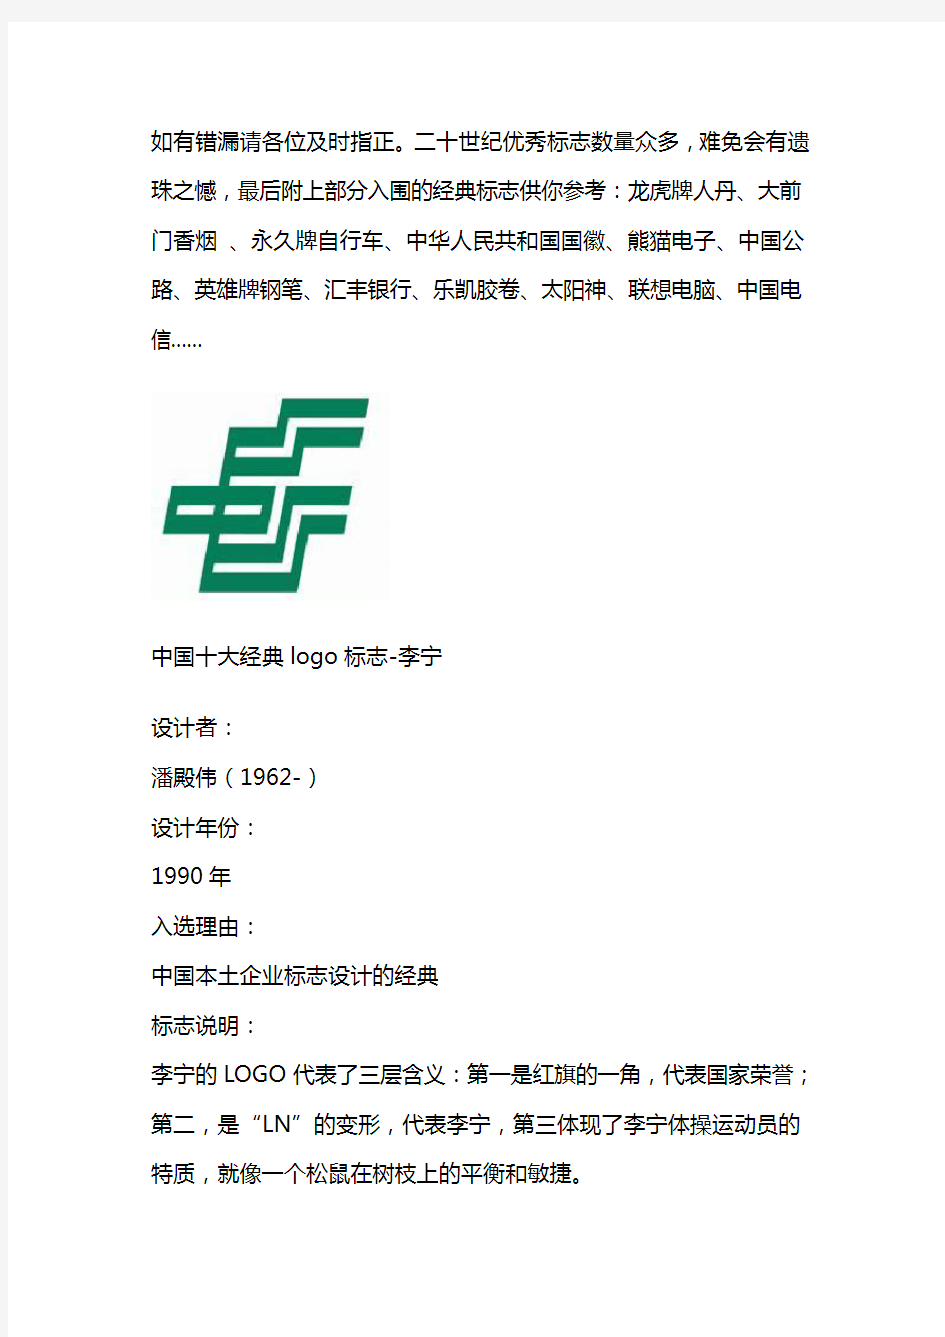 中国十大经典logo标志收集资料